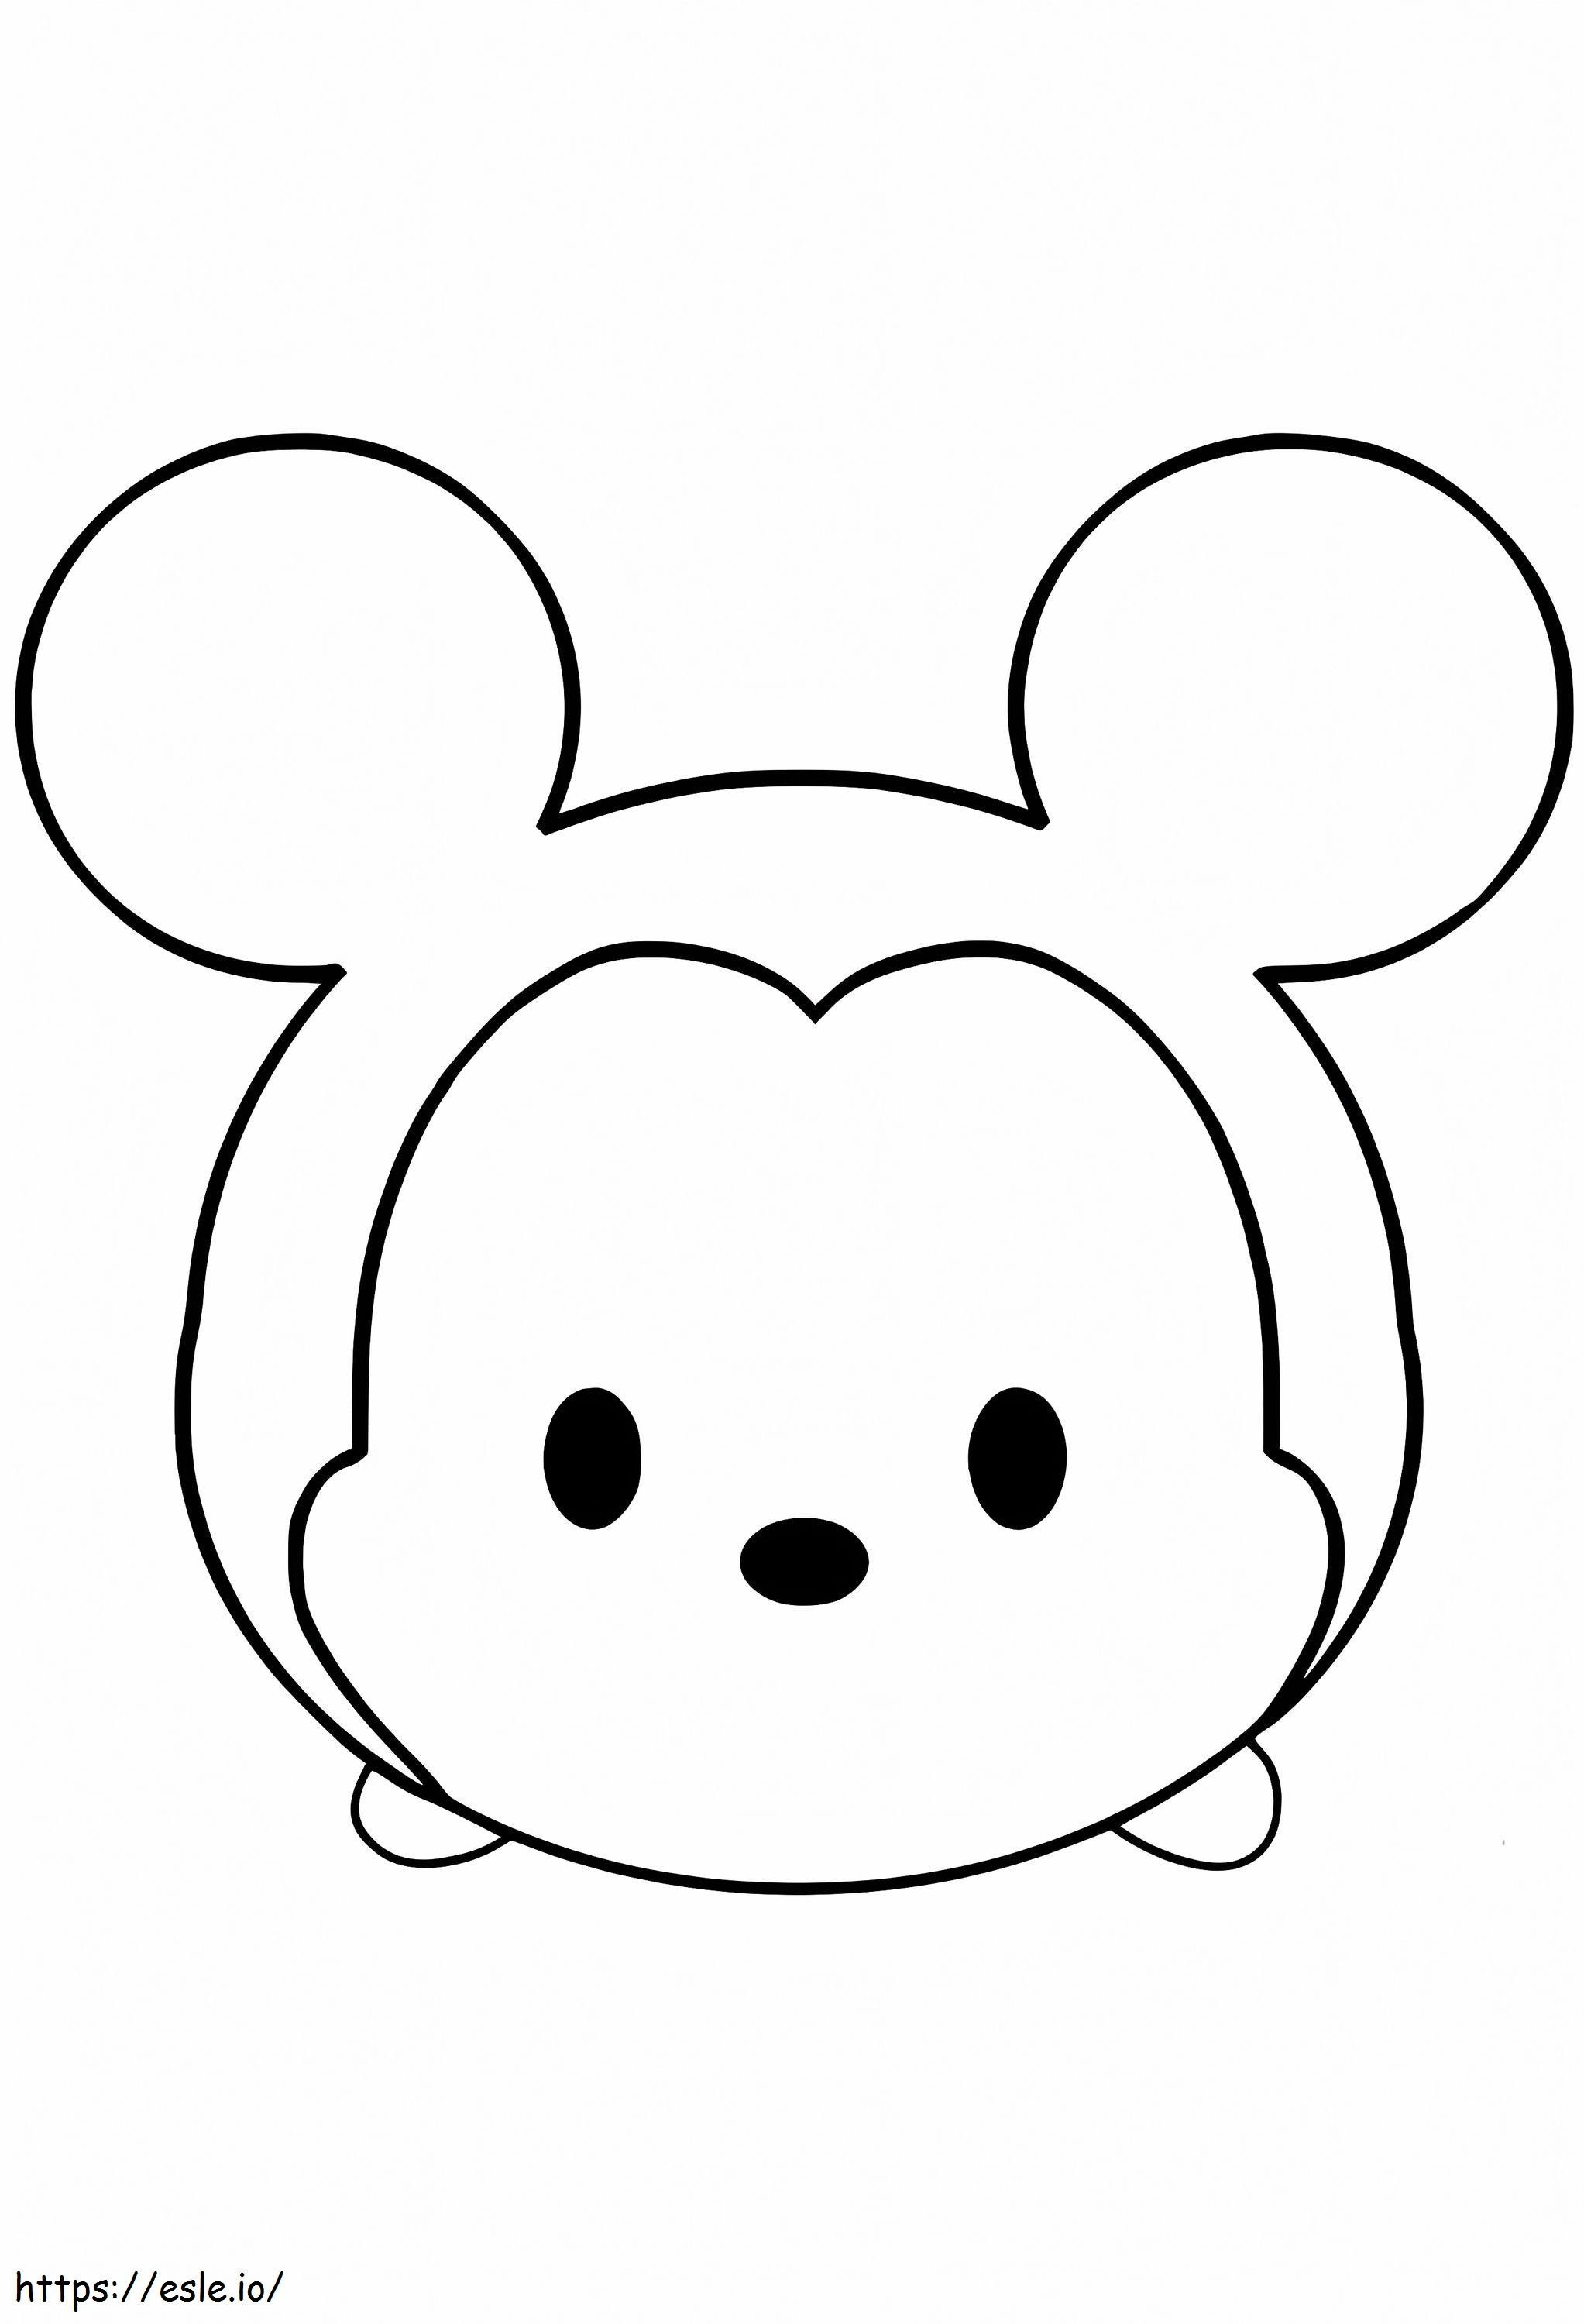 Leuke muis-emoji kleurplaat kleurplaat